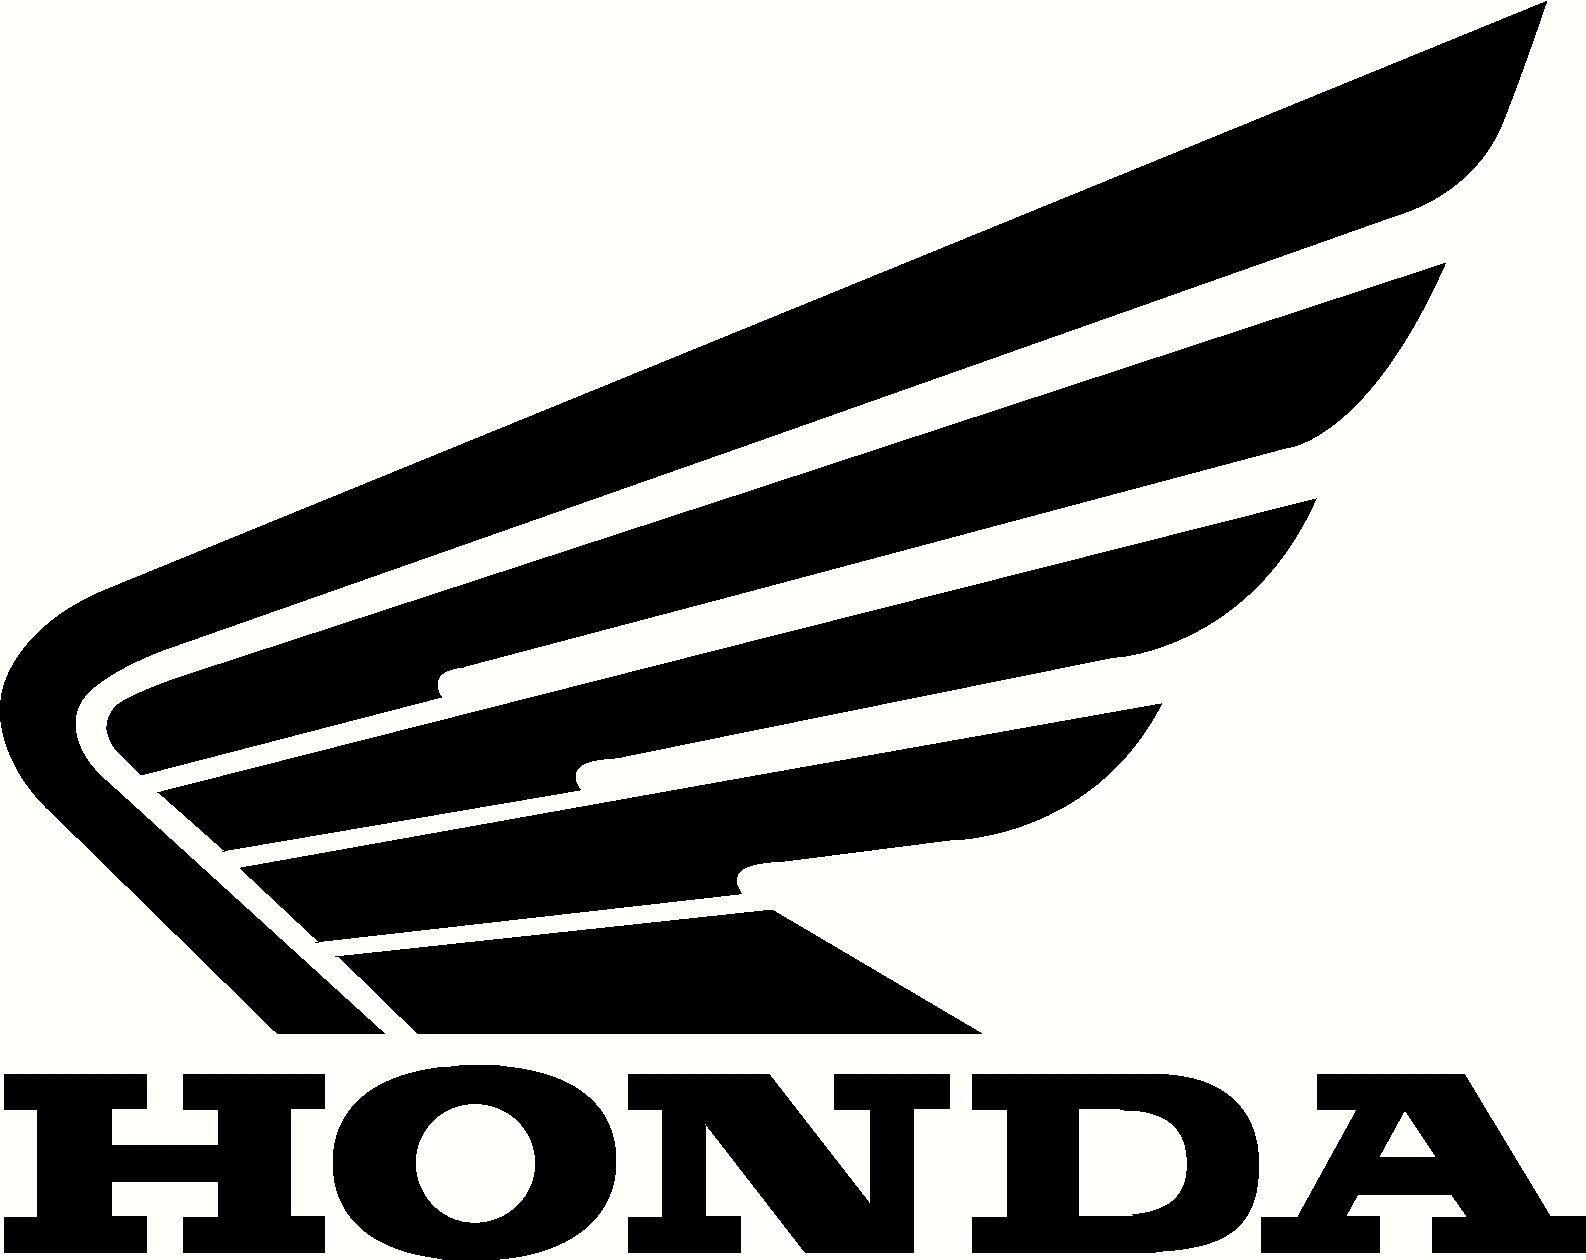 Honda ATV and Motorcycle Logo - Pin by Ross Robinson on motorcycles logos | Pinterest | Motorcycle ...